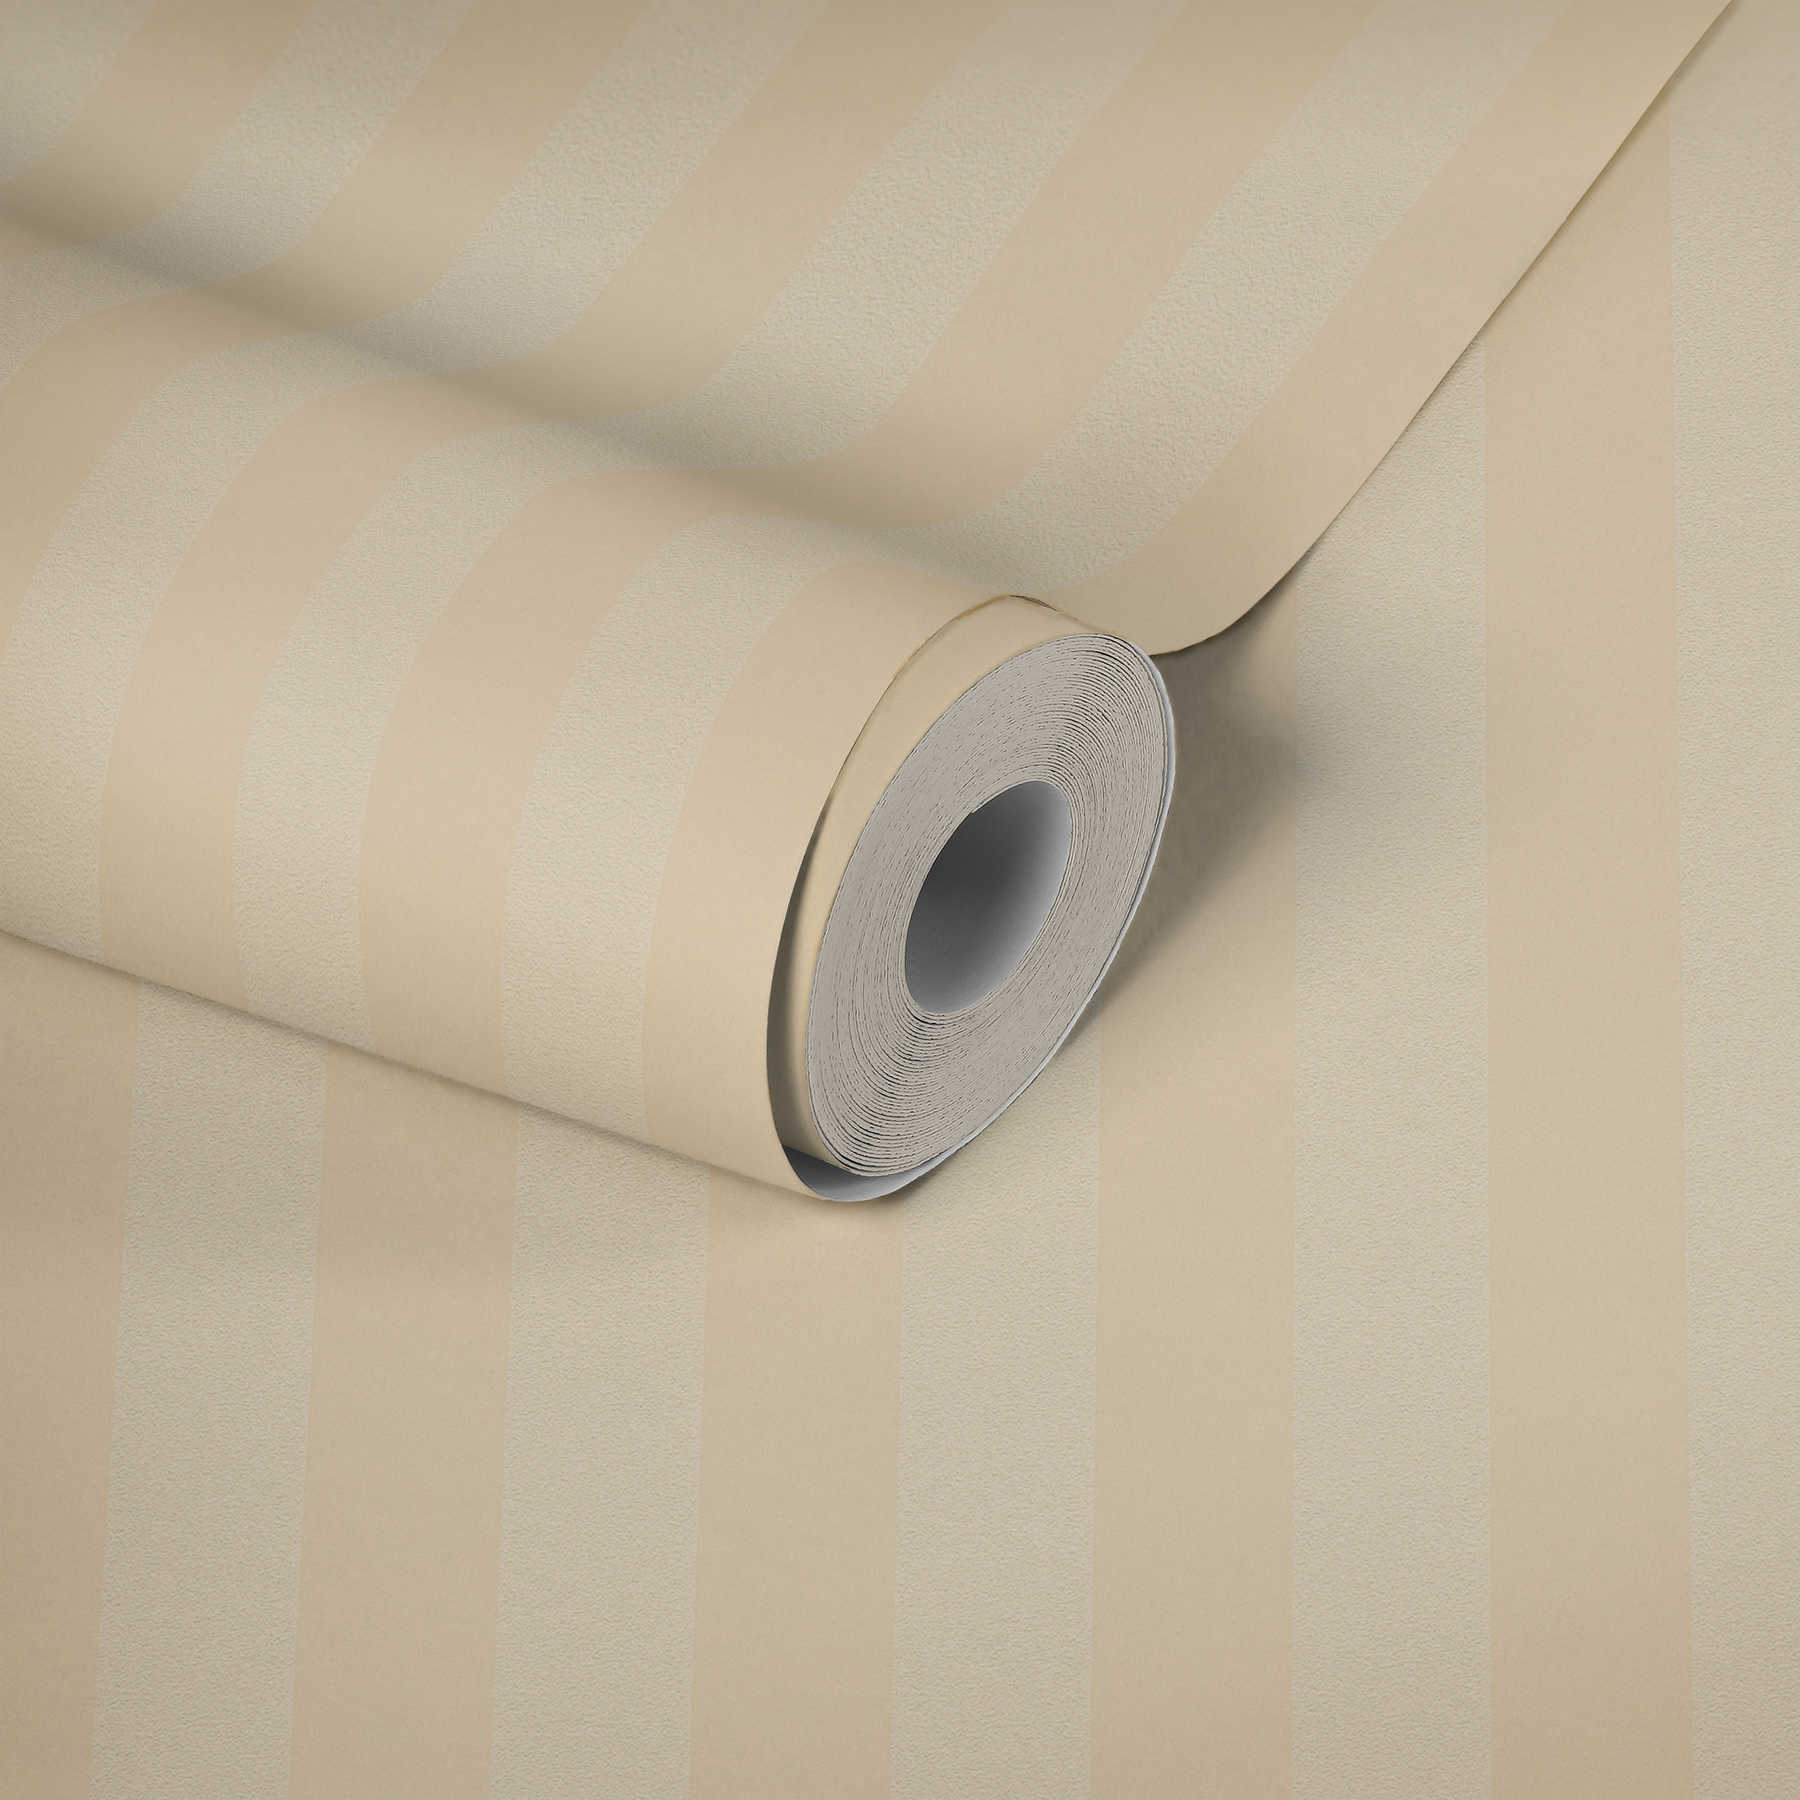             Stripe behang klassiek romantisch design - crème
        